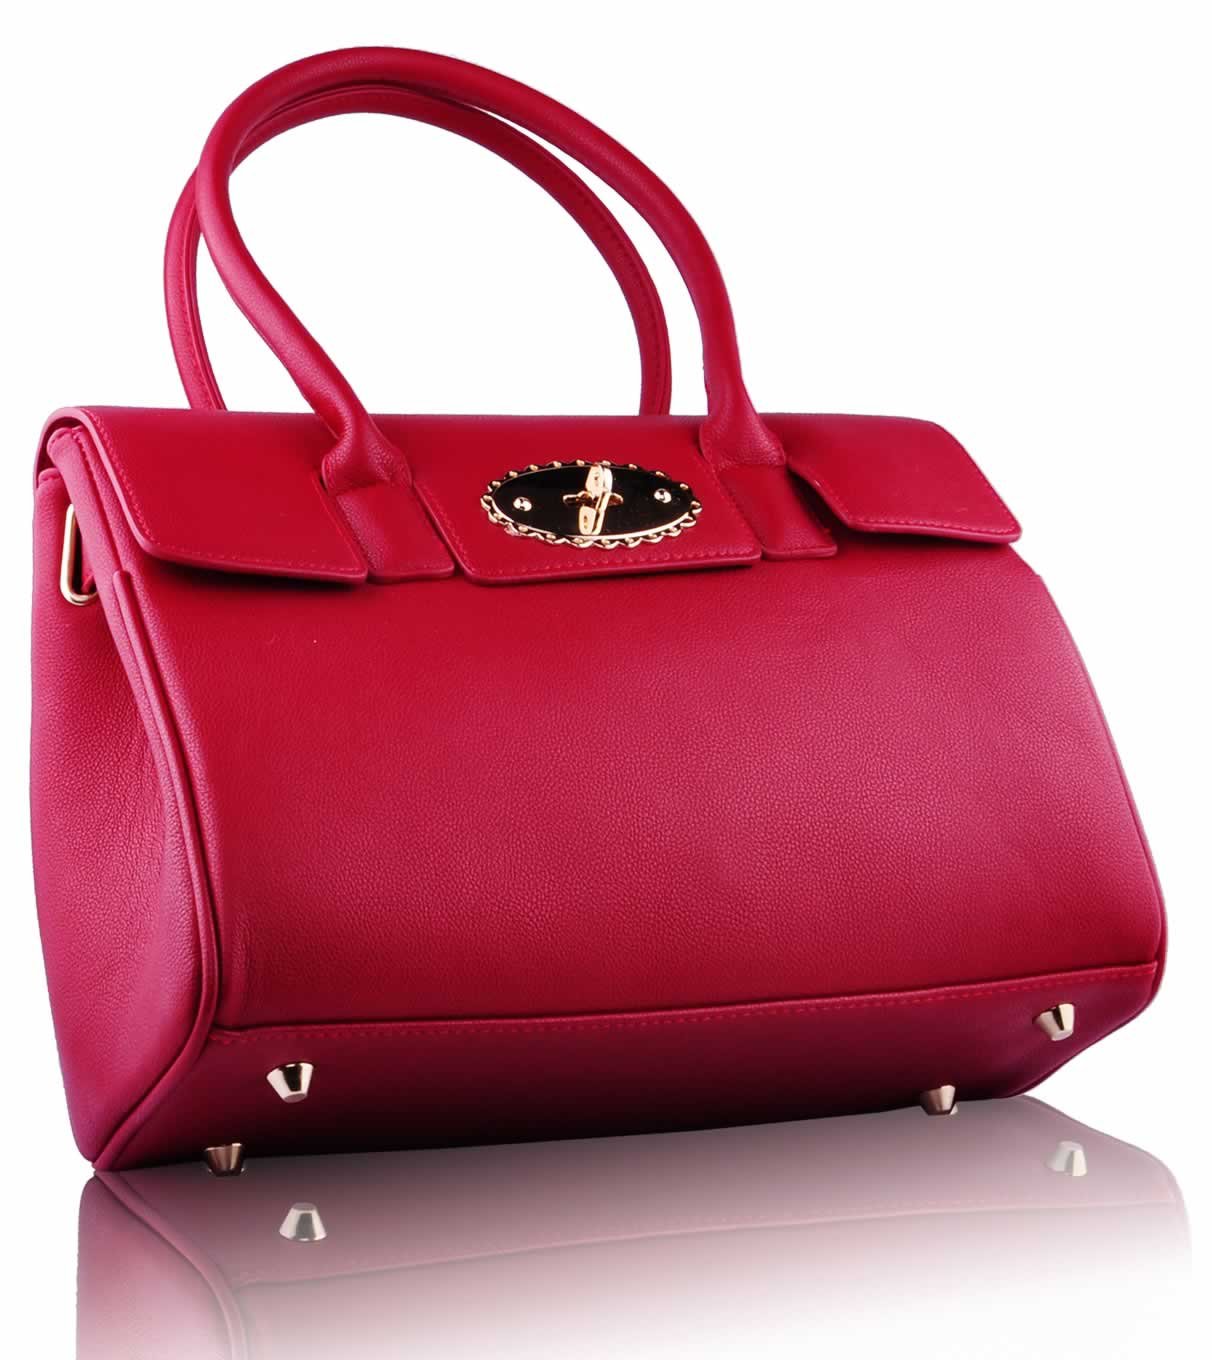 Wholesale Luxury Red Satchel grab Handbag